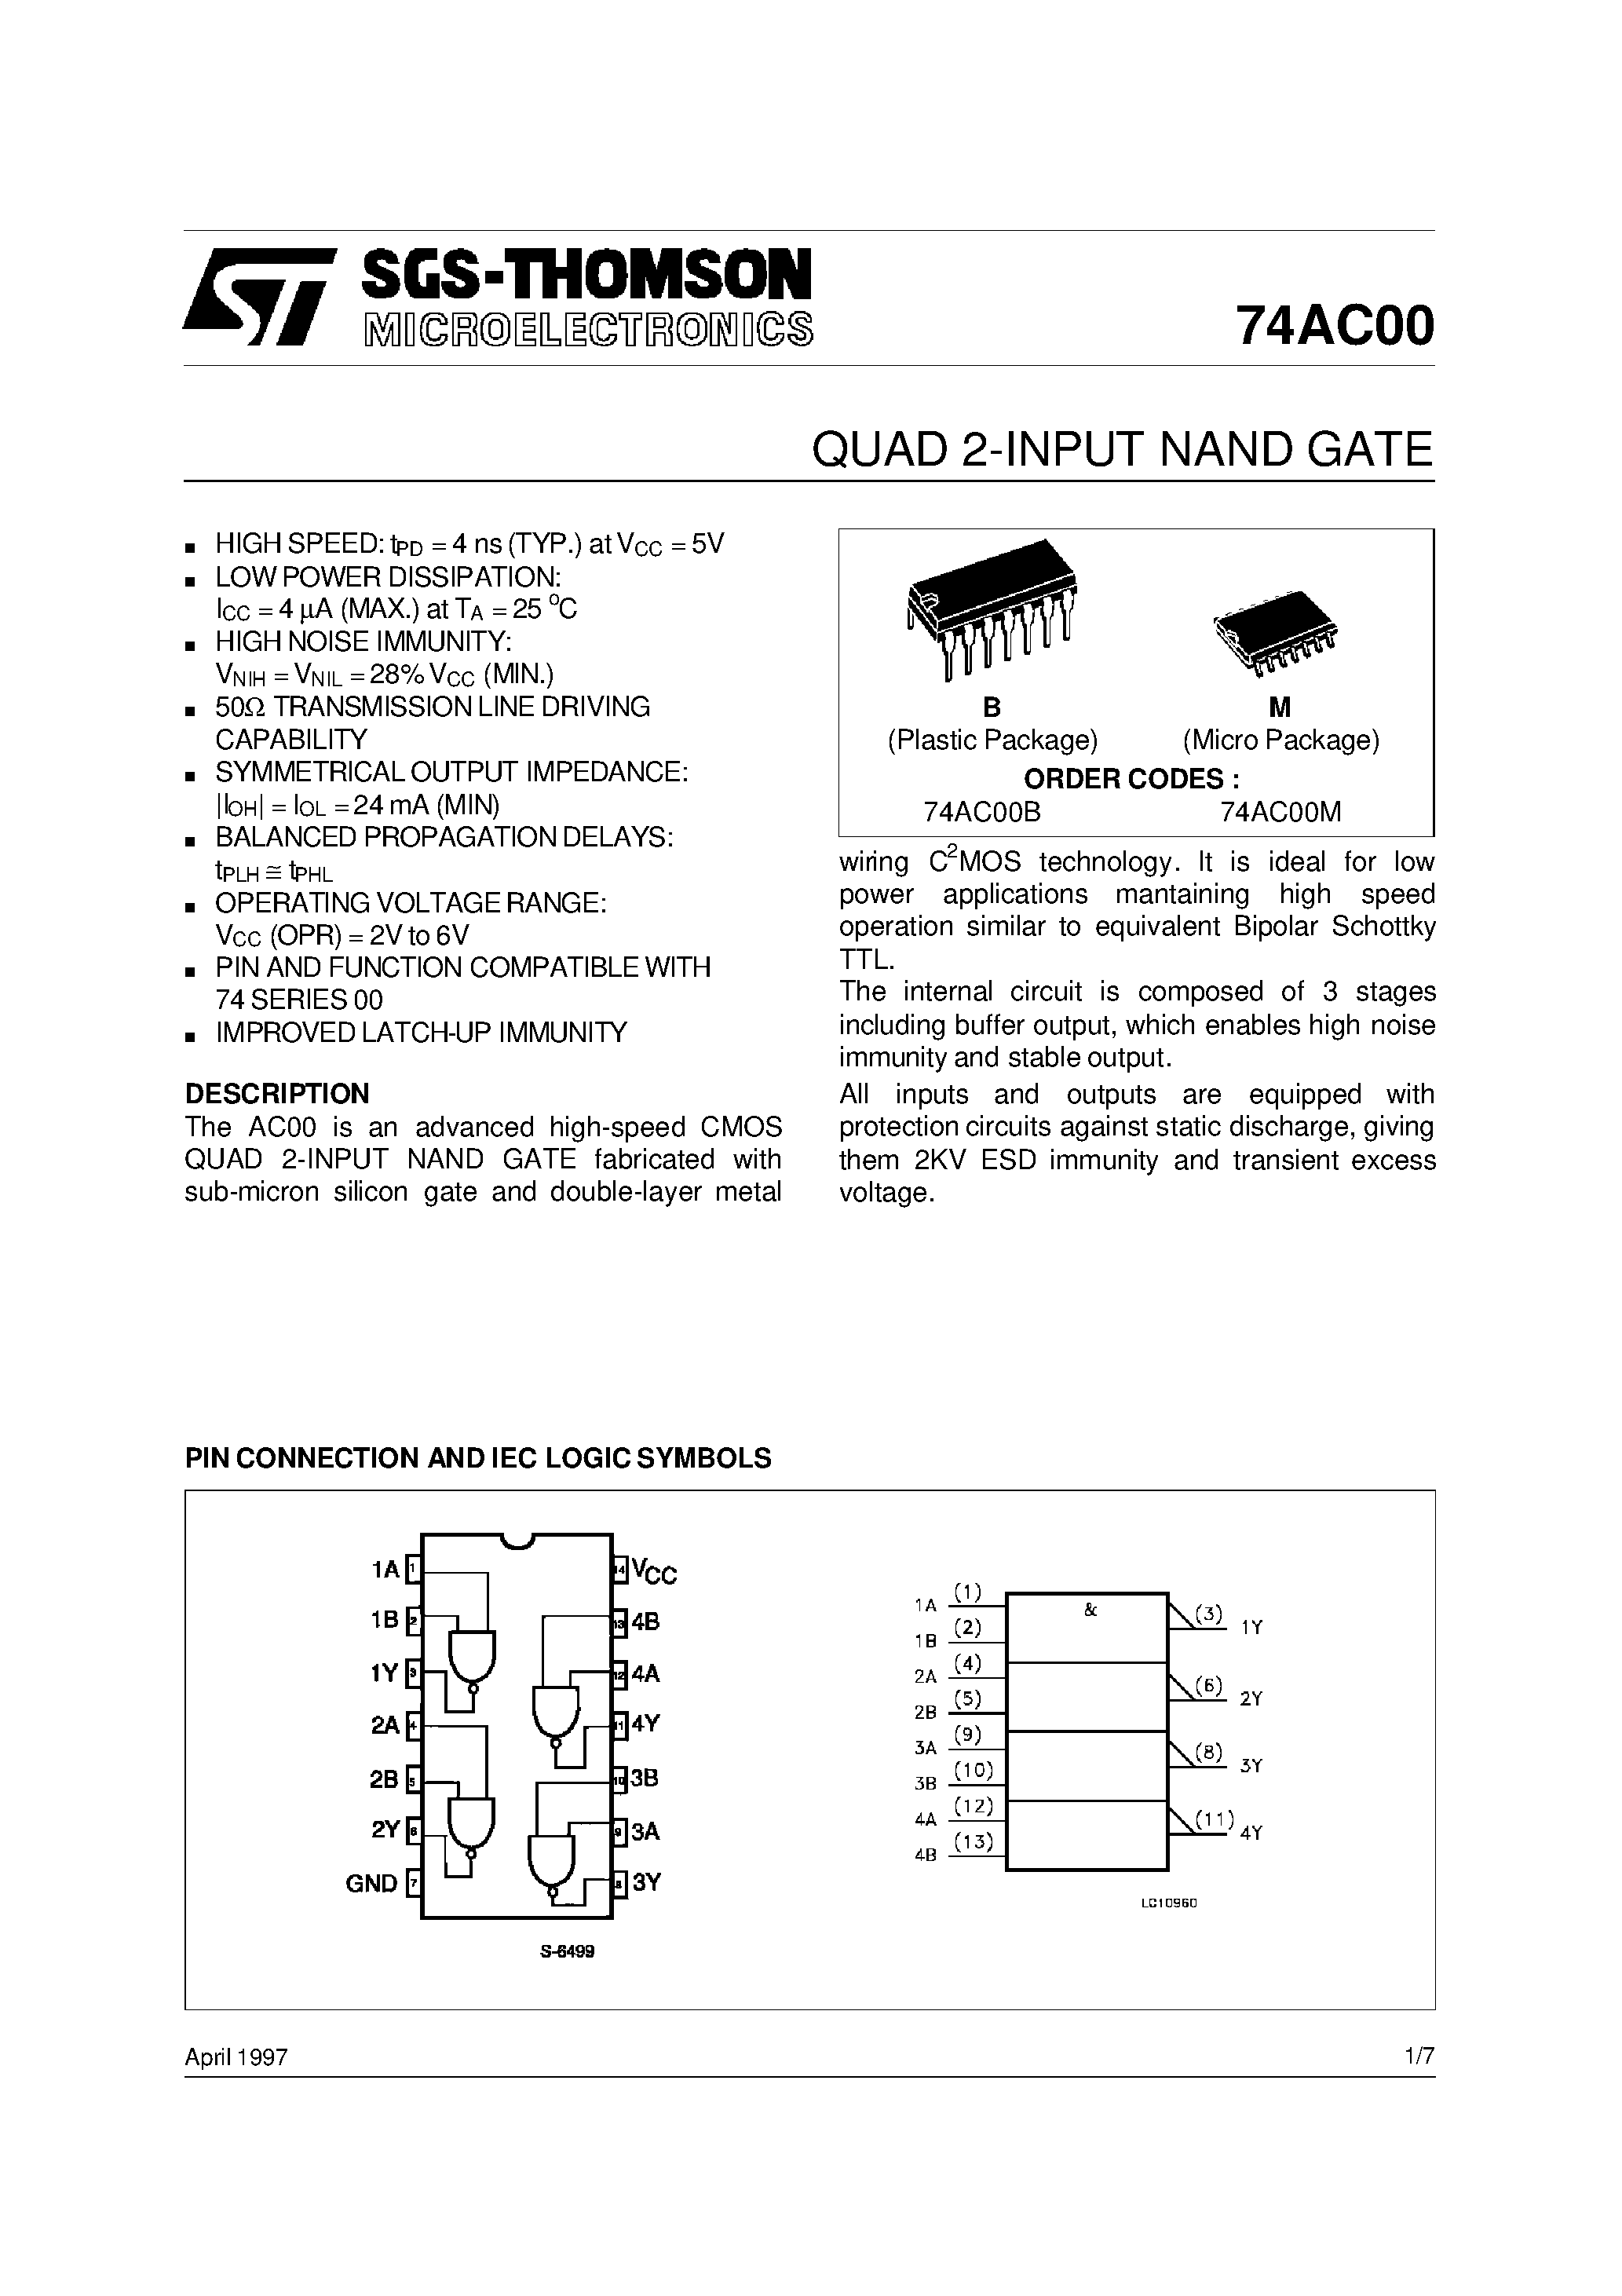 Даташит 74AC00MTC - Quad 2-Input NAND Gate страница 1